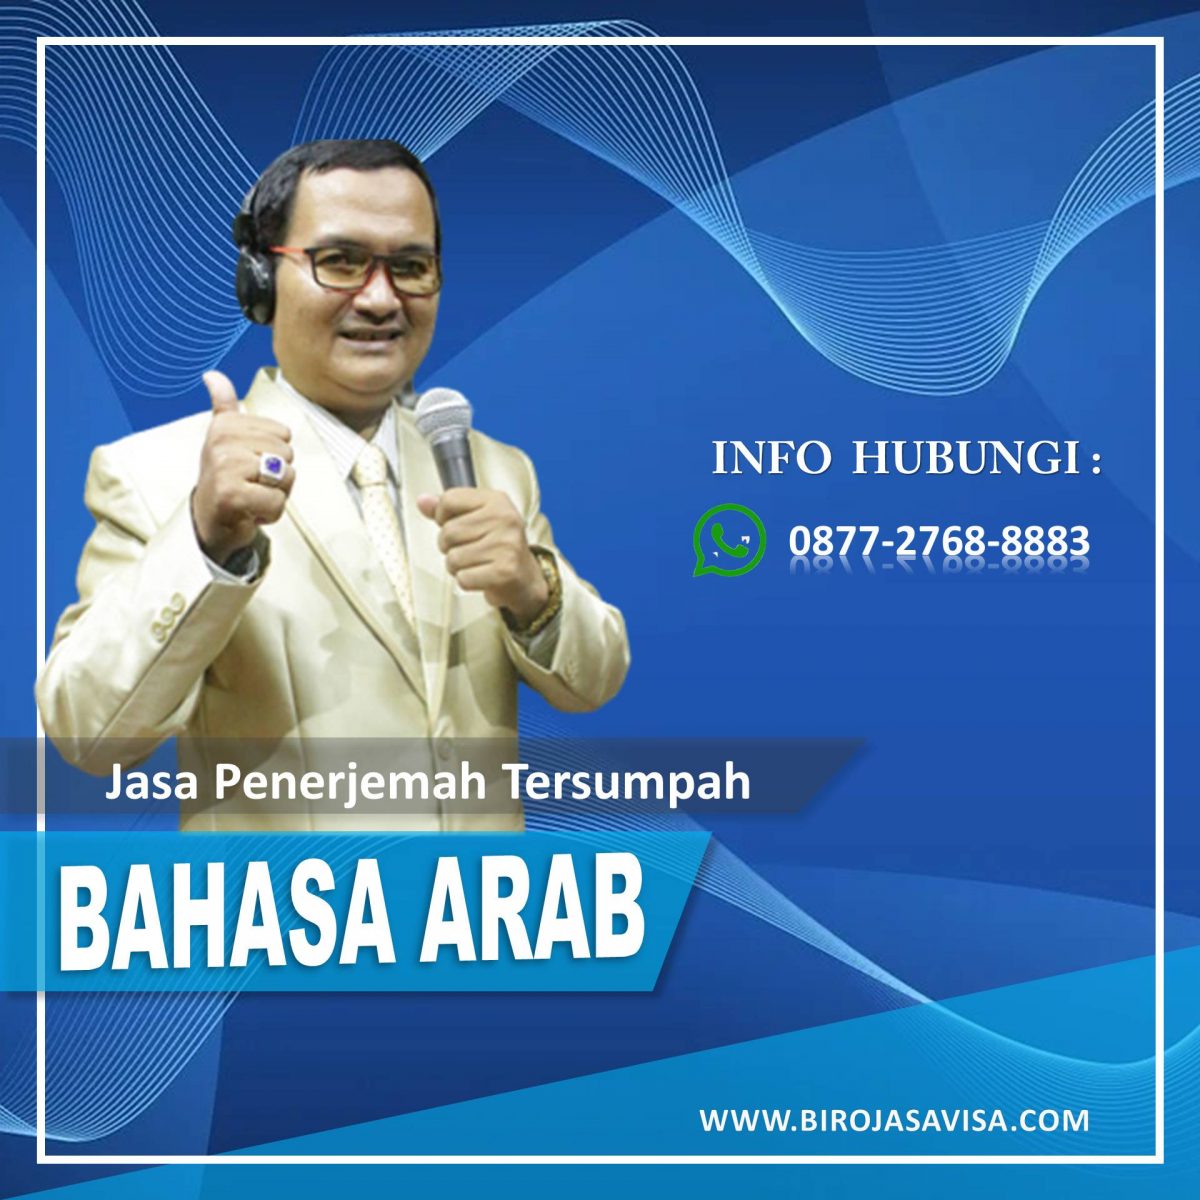 Penerjemah Tersumpah Bahasa Arab Profesional dan Akurat di Taman Sari Jakarta Barat, Hubungi 0877 2768 8883